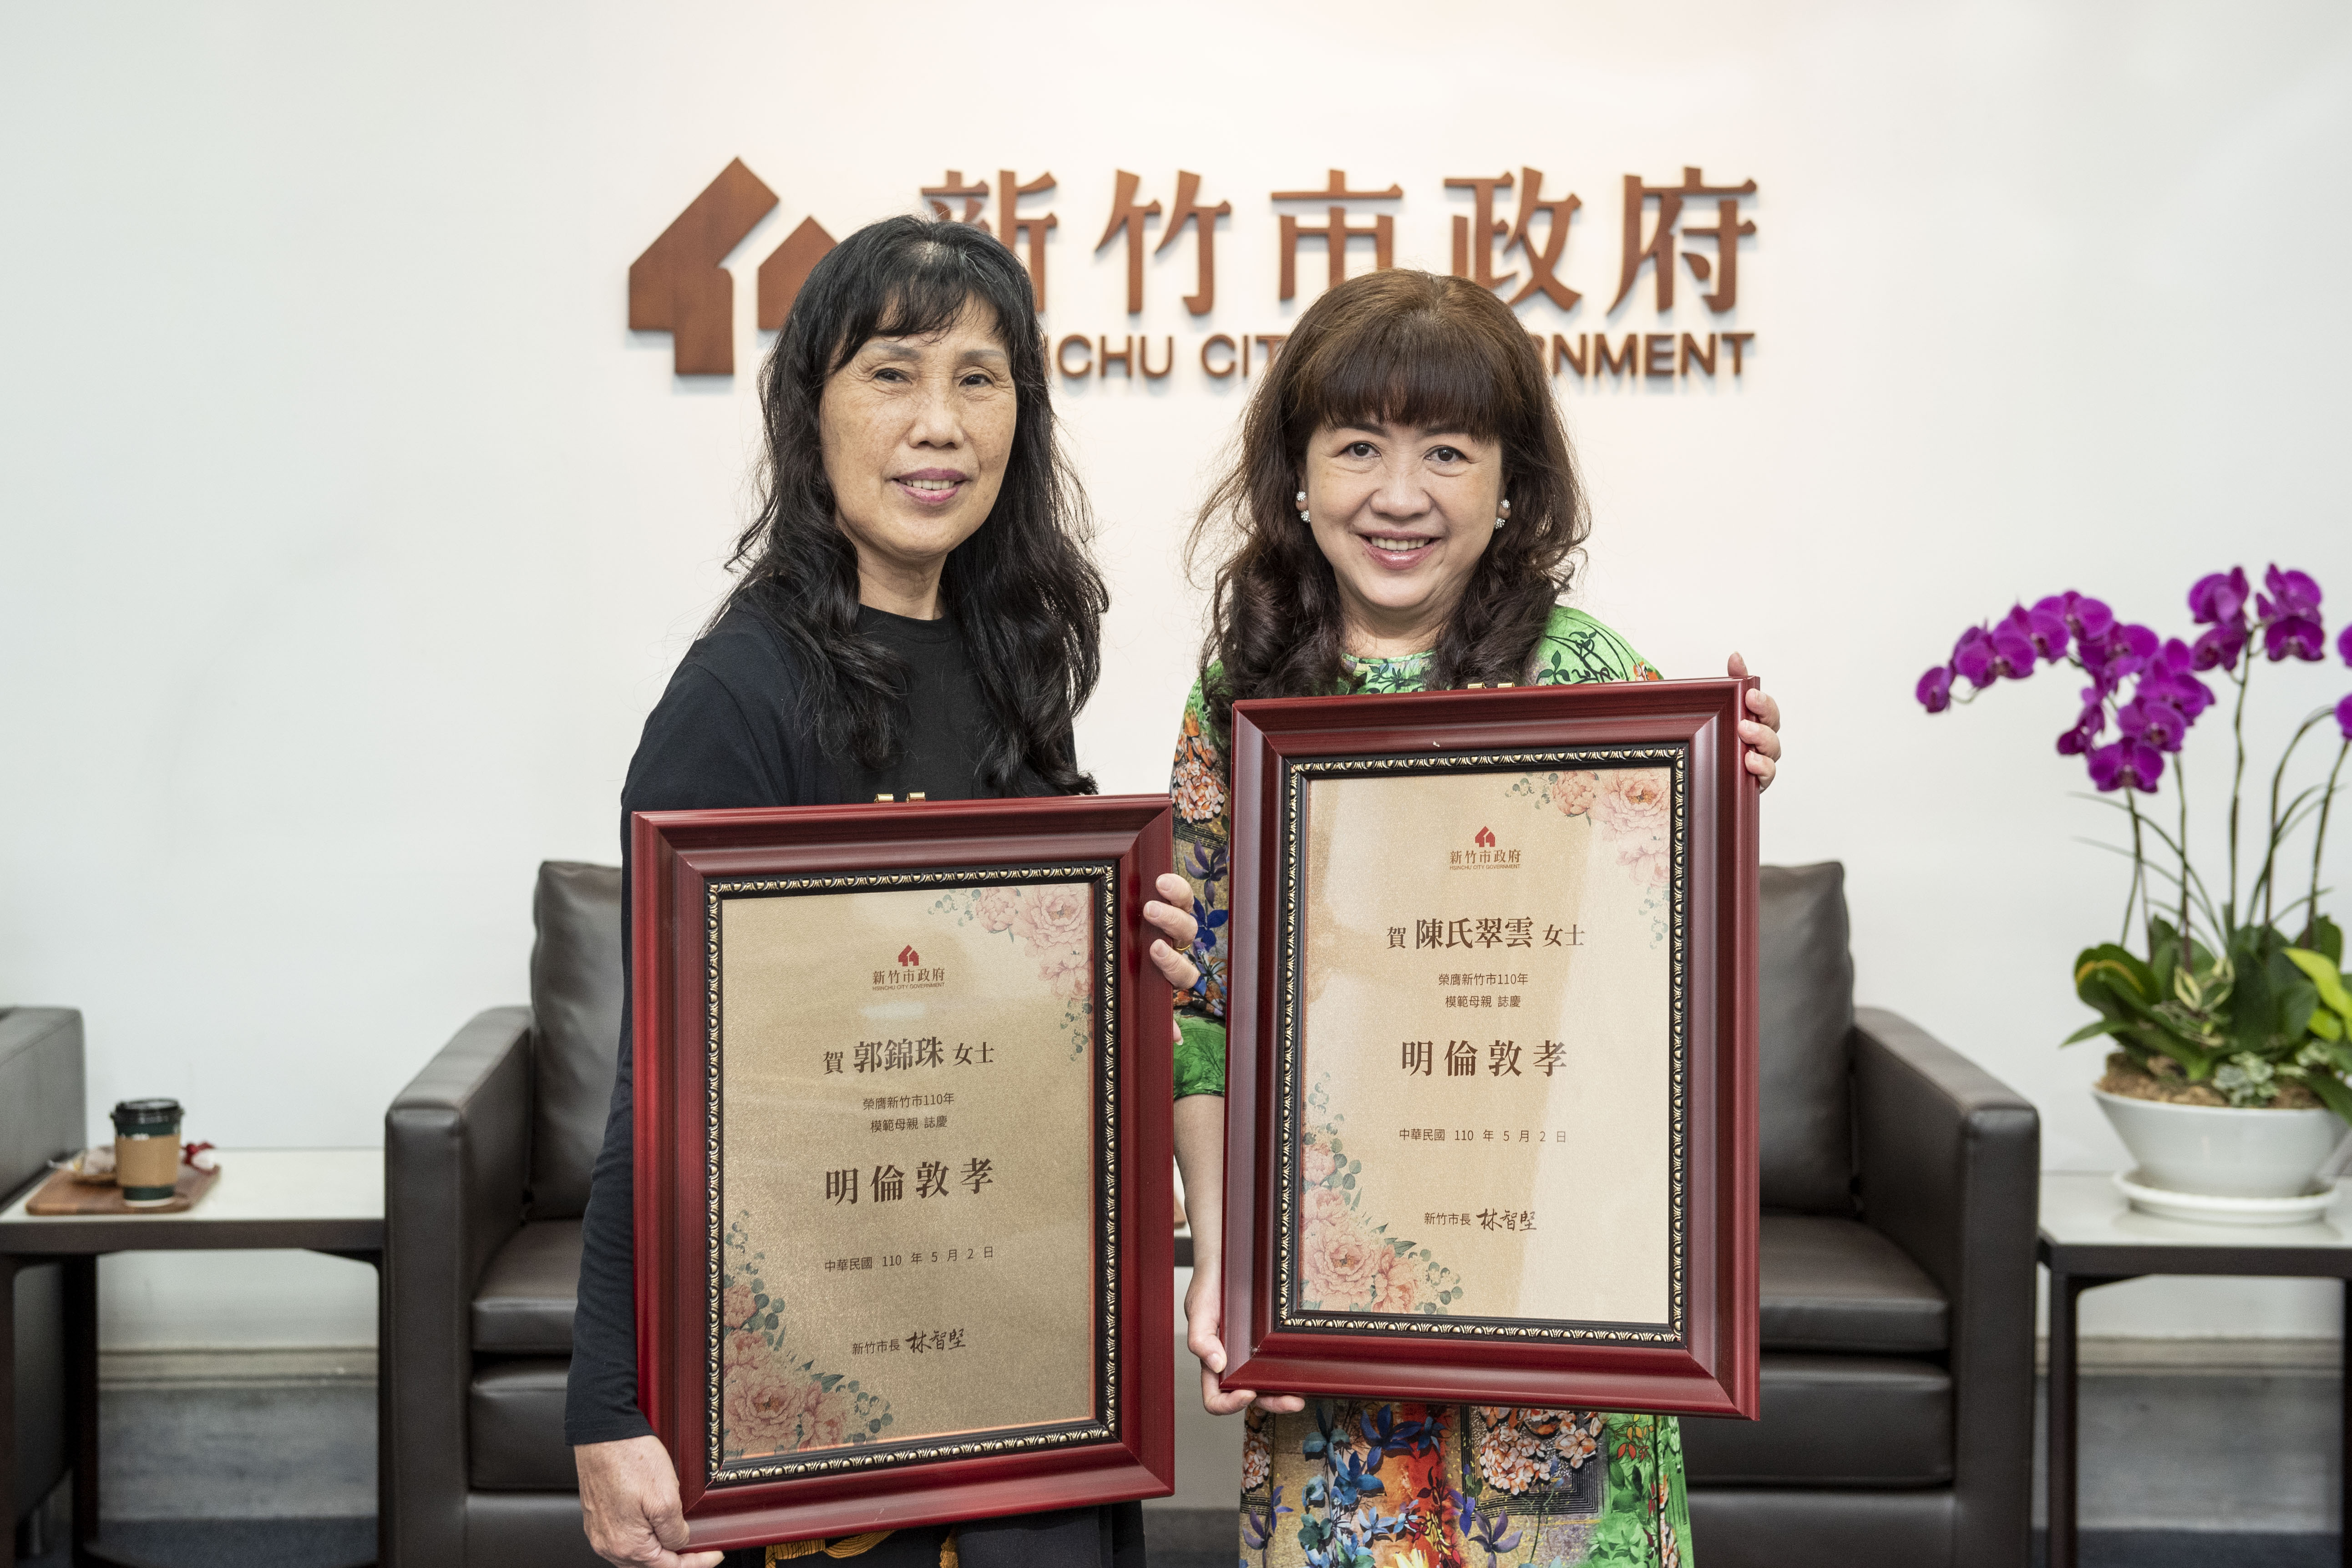 「寄養媽媽」郭錦珠(左)、「新住民媽媽」陳氏翠雲(右)都獲選為今年模範母親。